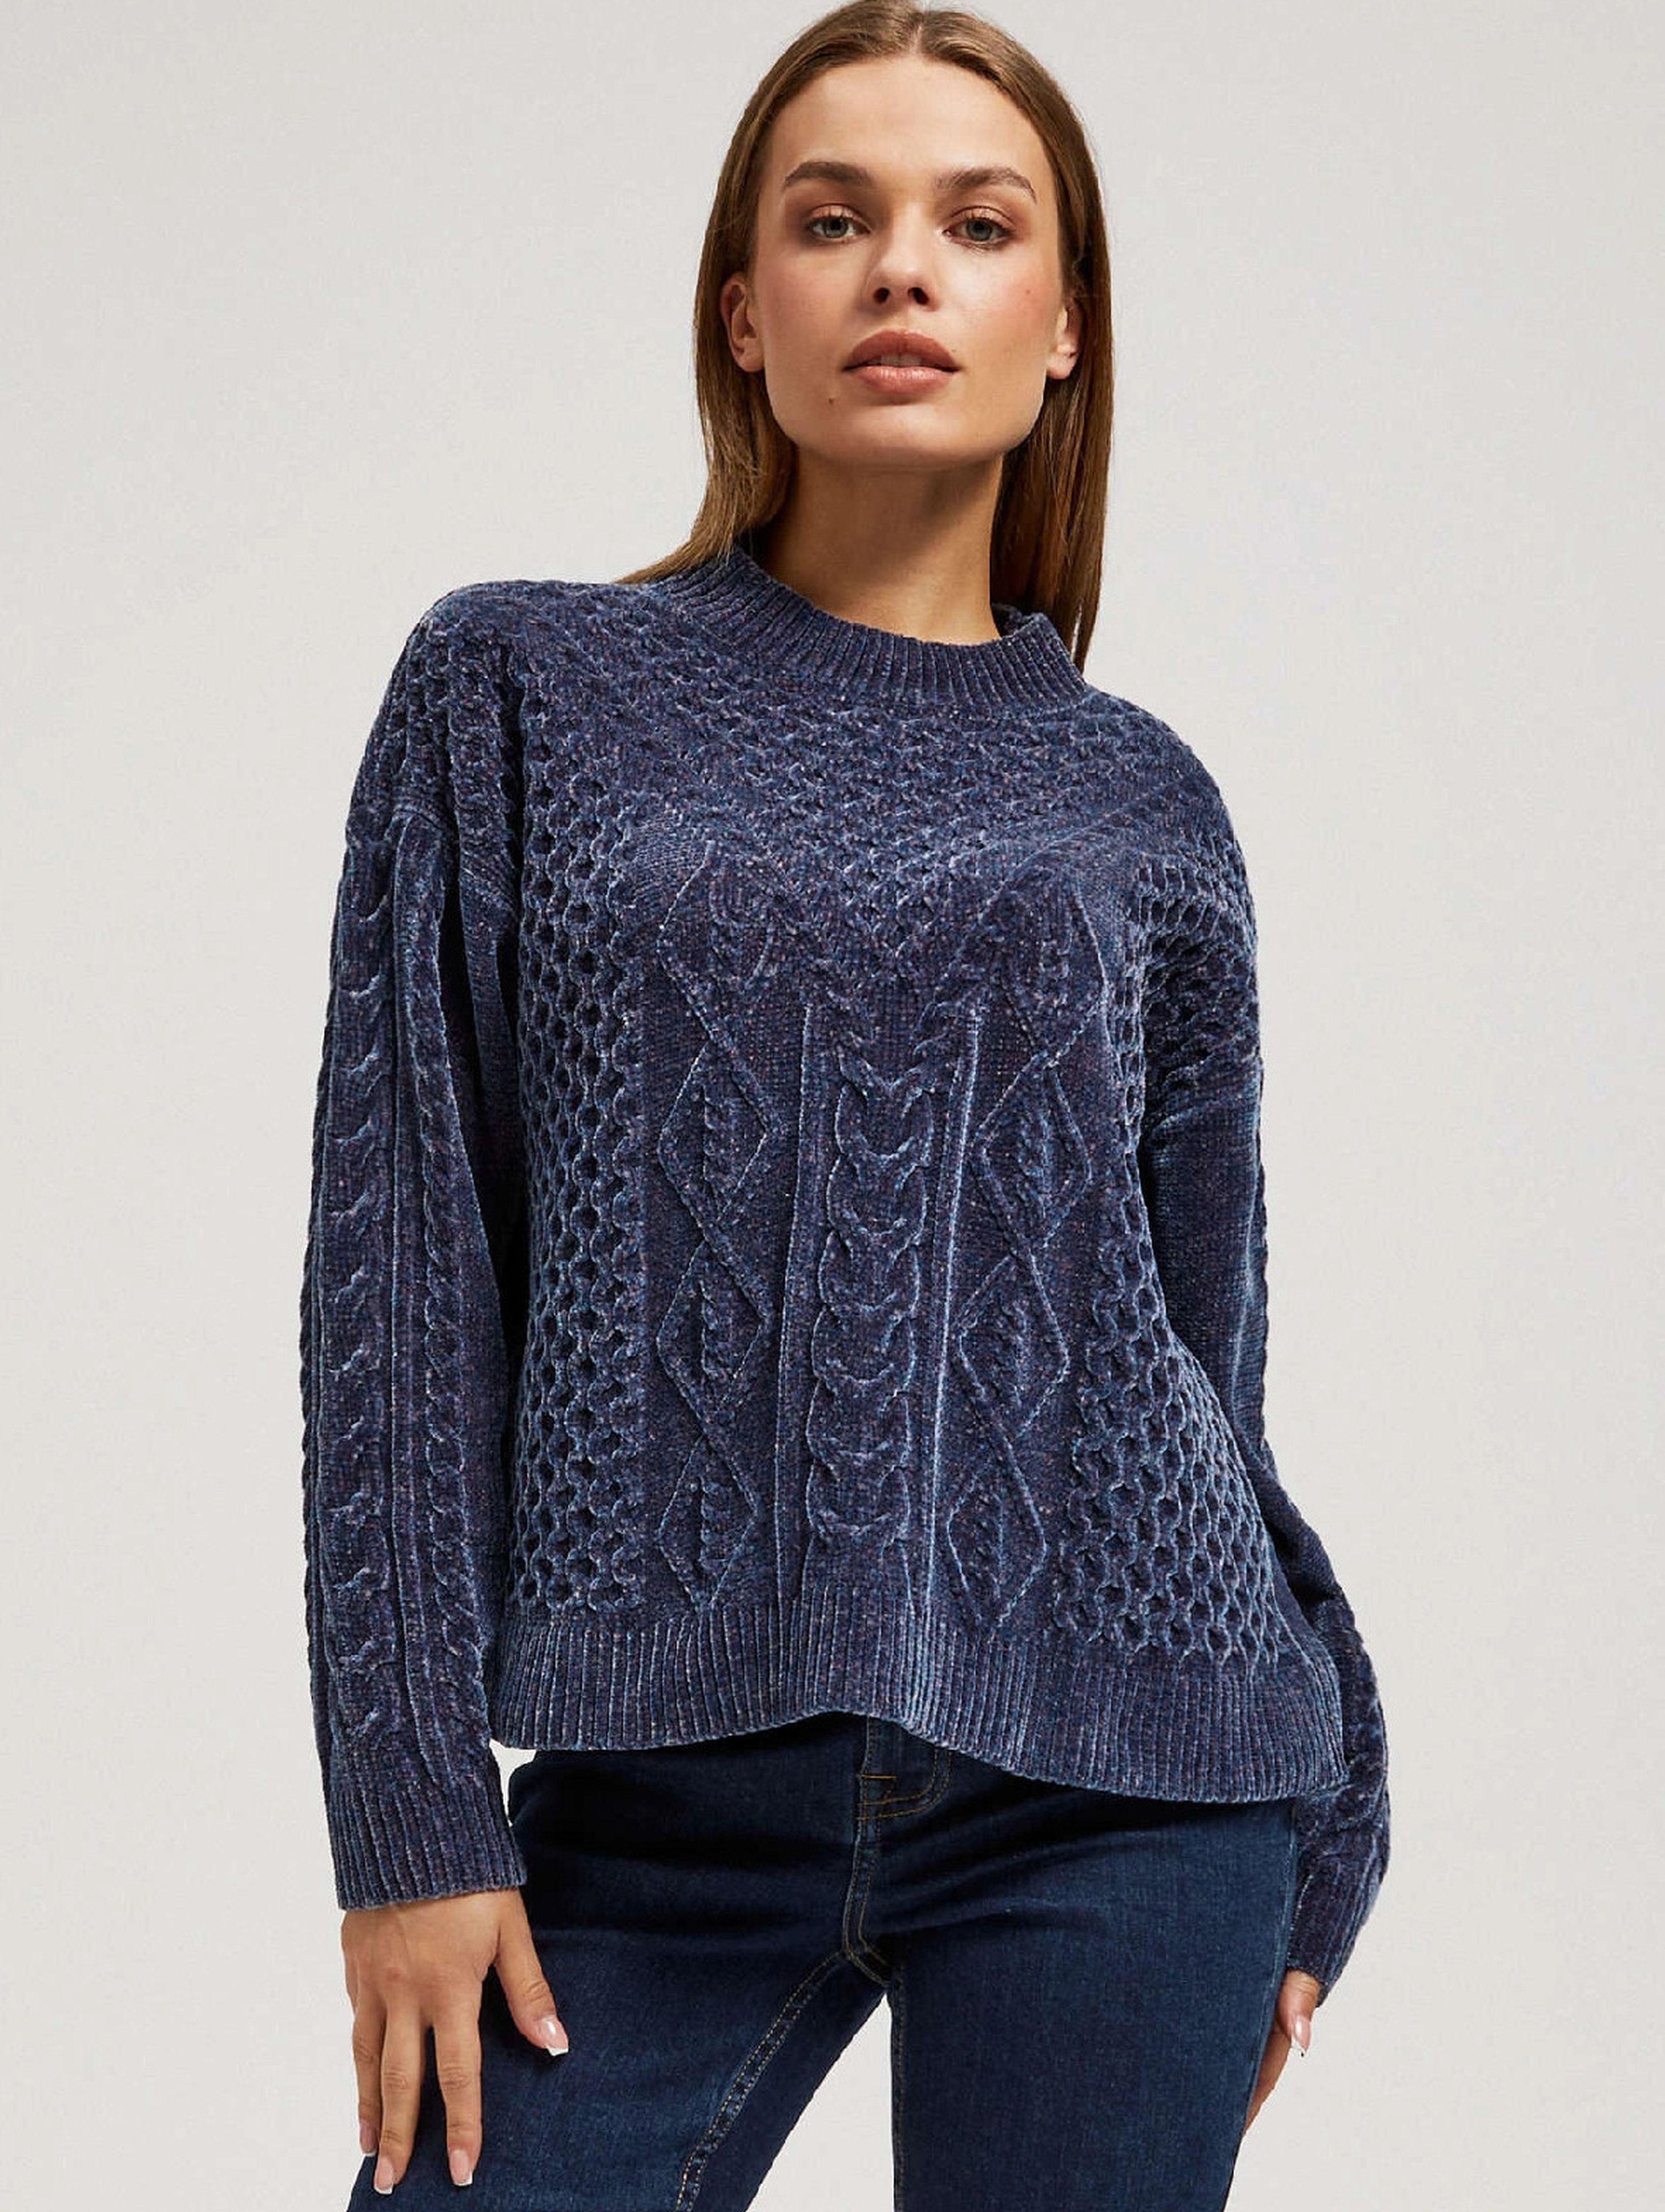 Granatowy sweter damski luźny z ozdobnym splotem